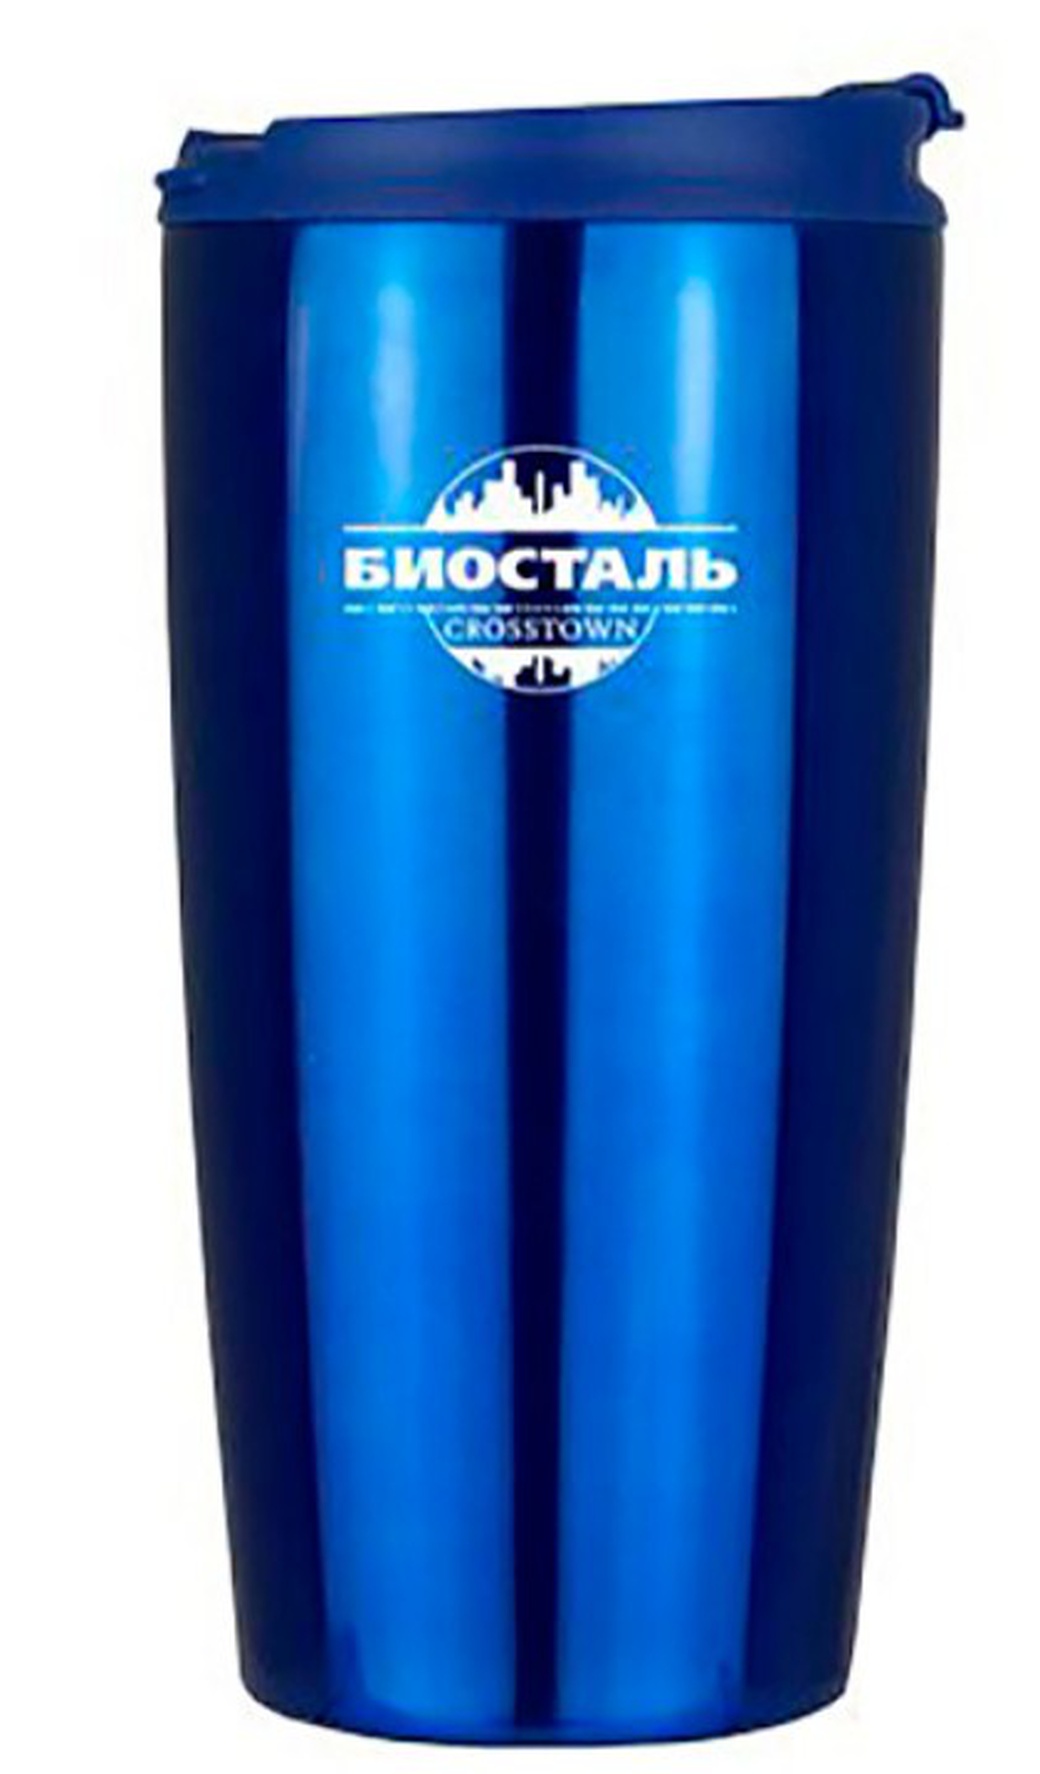 Термокружка Biostal Crosstown (0,5 литра), синяя фото